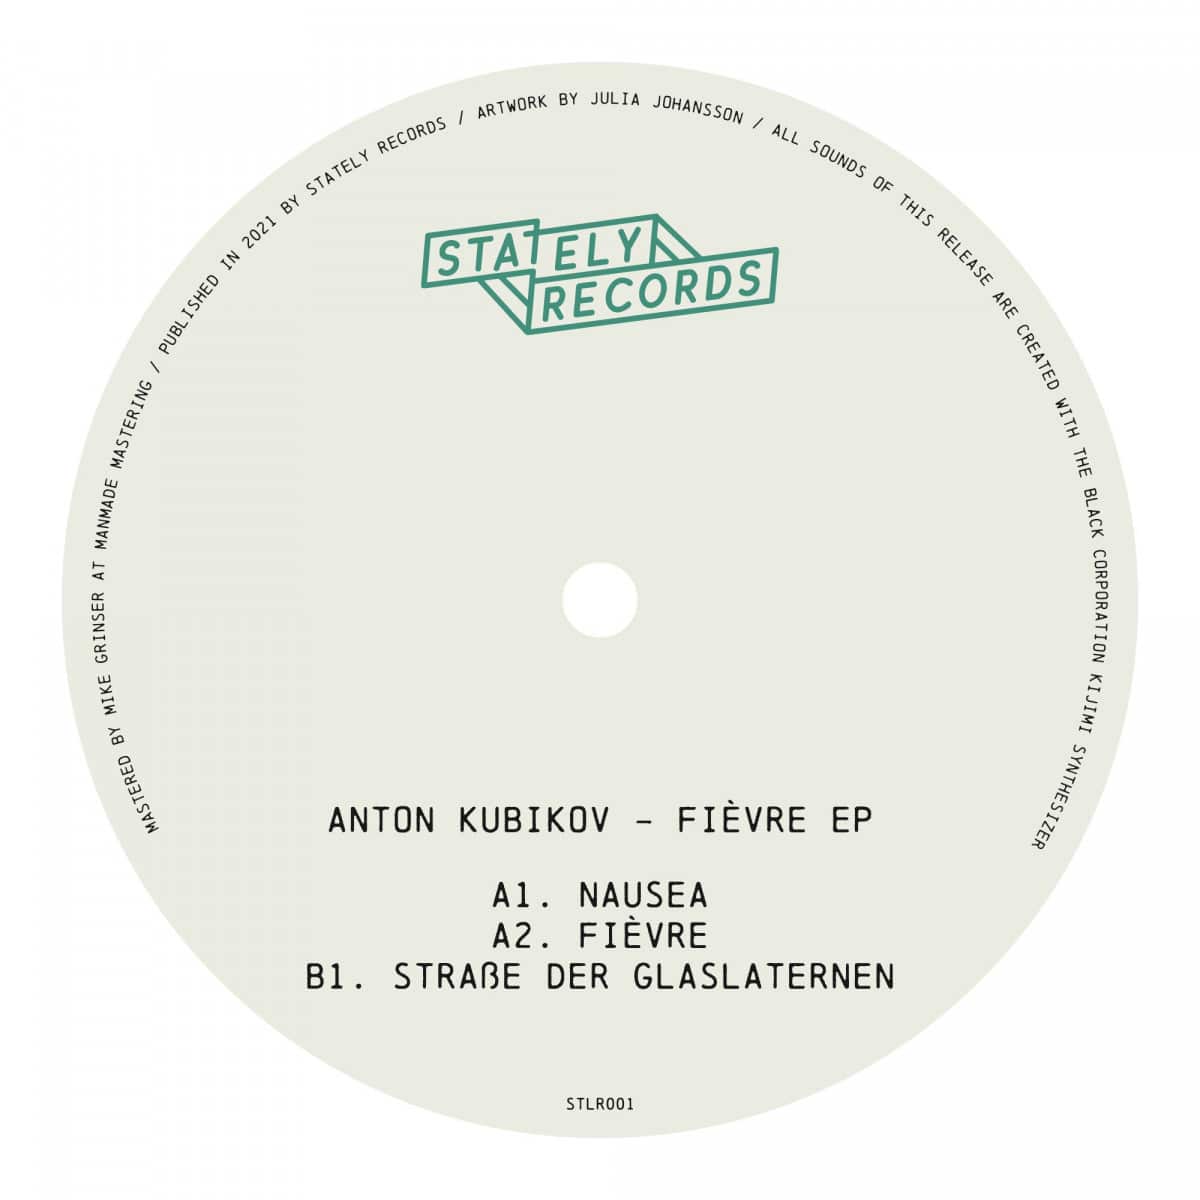 Anton Kubikov - Fievre - STLR001 - STATELY RECORDS